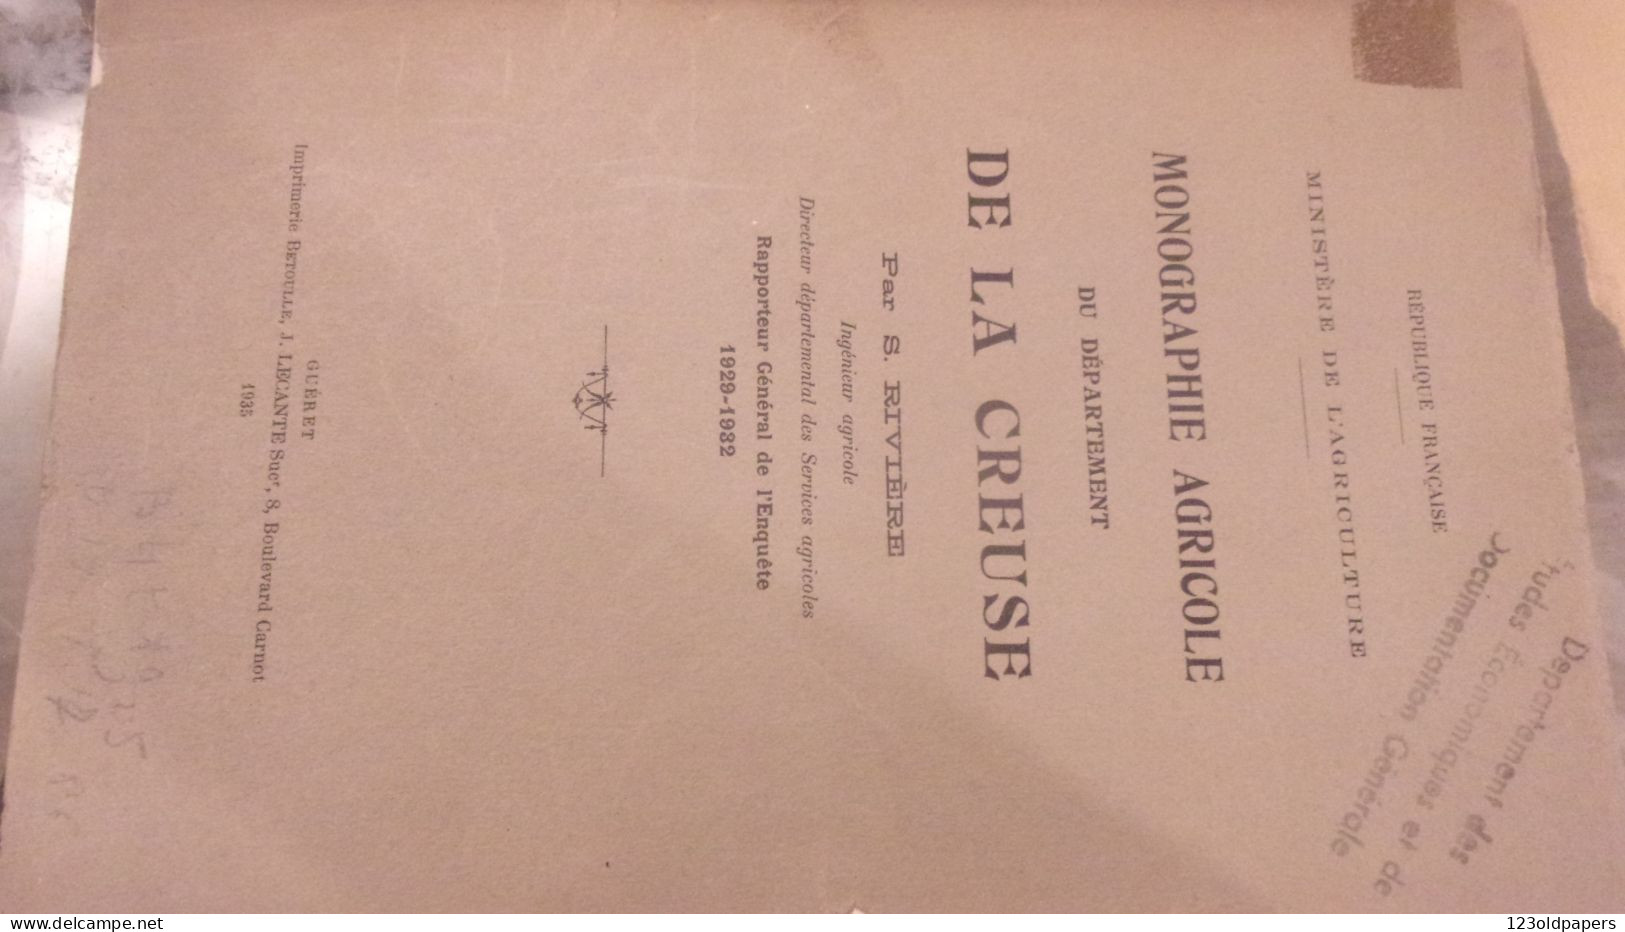 CREUSE 1935 S RIVIERE MONOGRAPHIE AGRICOLE DU DEPARTEMENT DE LA CREUSE  ENQUETE DE 1929 A 1932